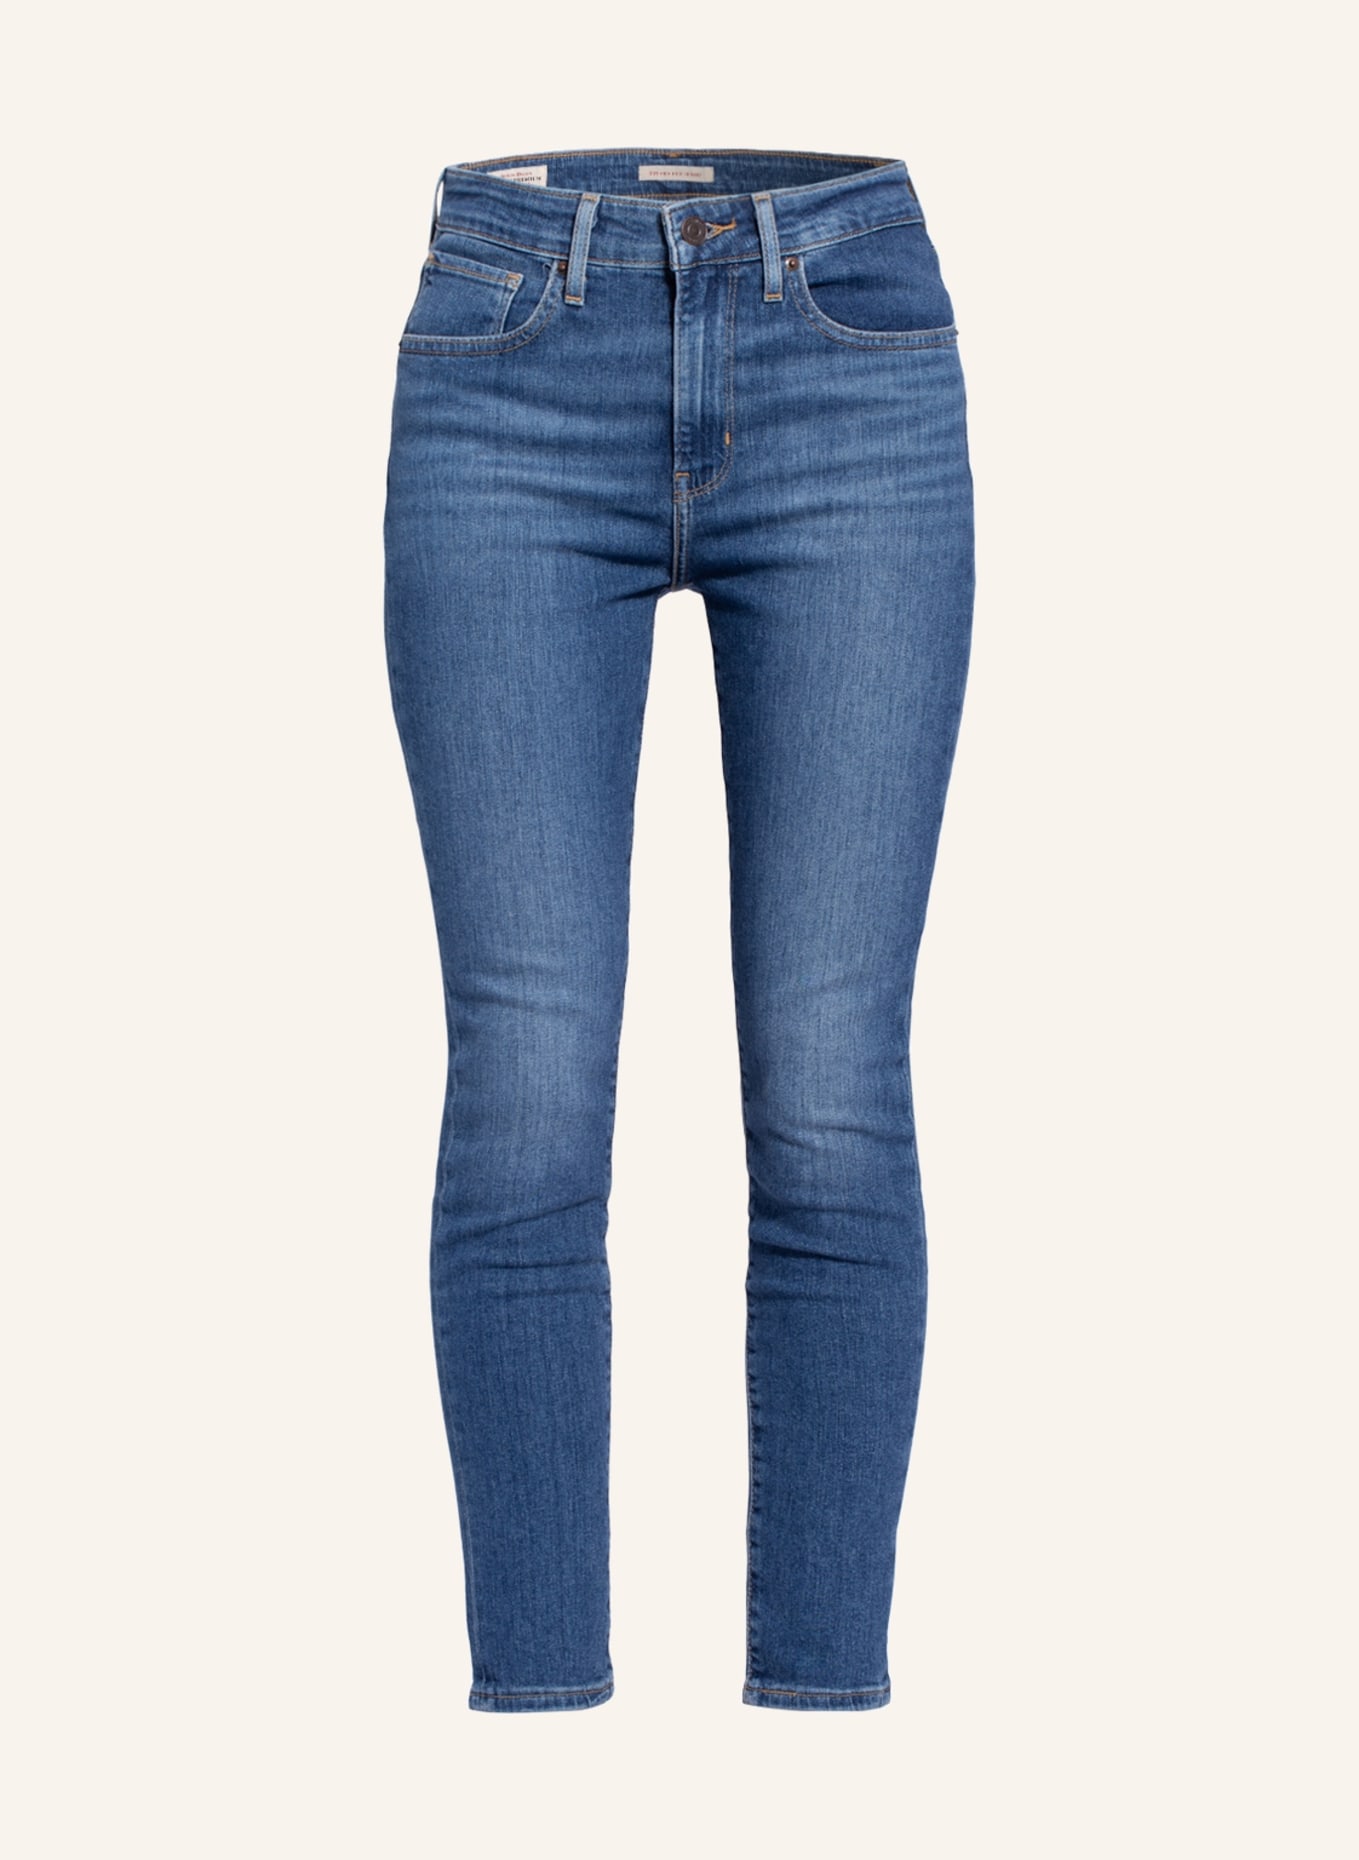 Levi's® Skinny Jeans 721, Farbe: 22 Med Indigo - Worn In (Bild 1)